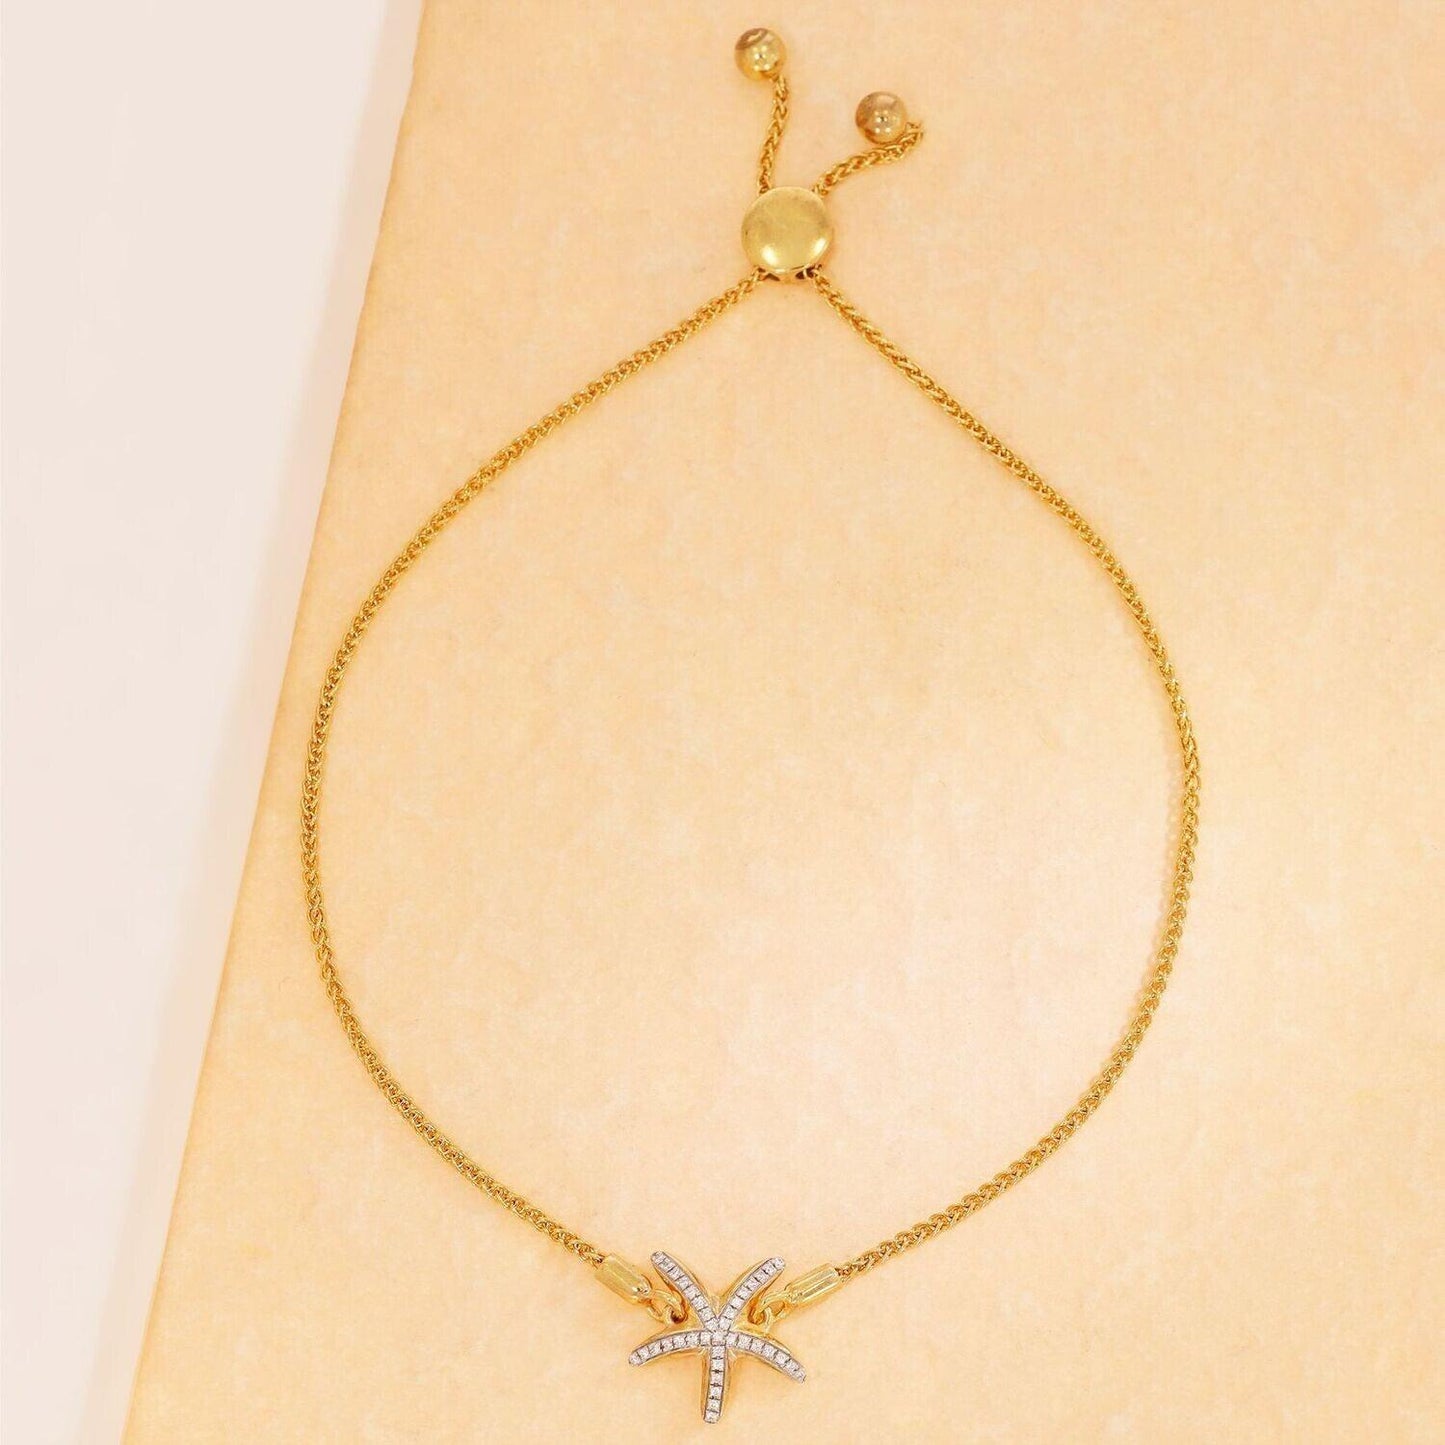 Sea Star Bracelet - The Silver Dahlia